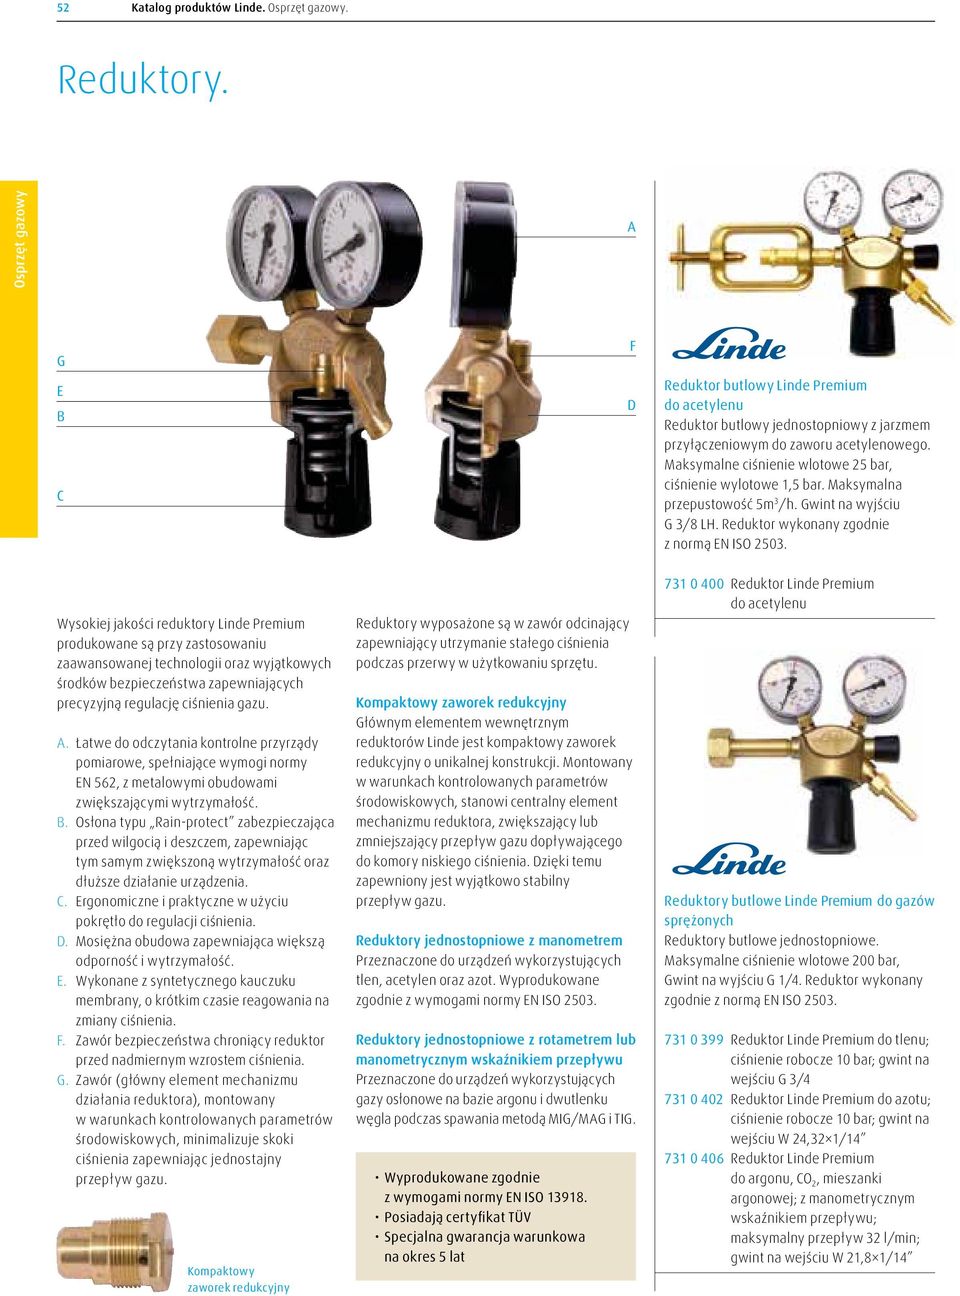 Wysokiej jakości reduktory Linde Premium produkowane są przy zastosowaniu zaawansowanej technologii oraz wyjątkowych środków bezpieczeństwa zapewniających precyzyjną regulację ciśnienia gazu. A.